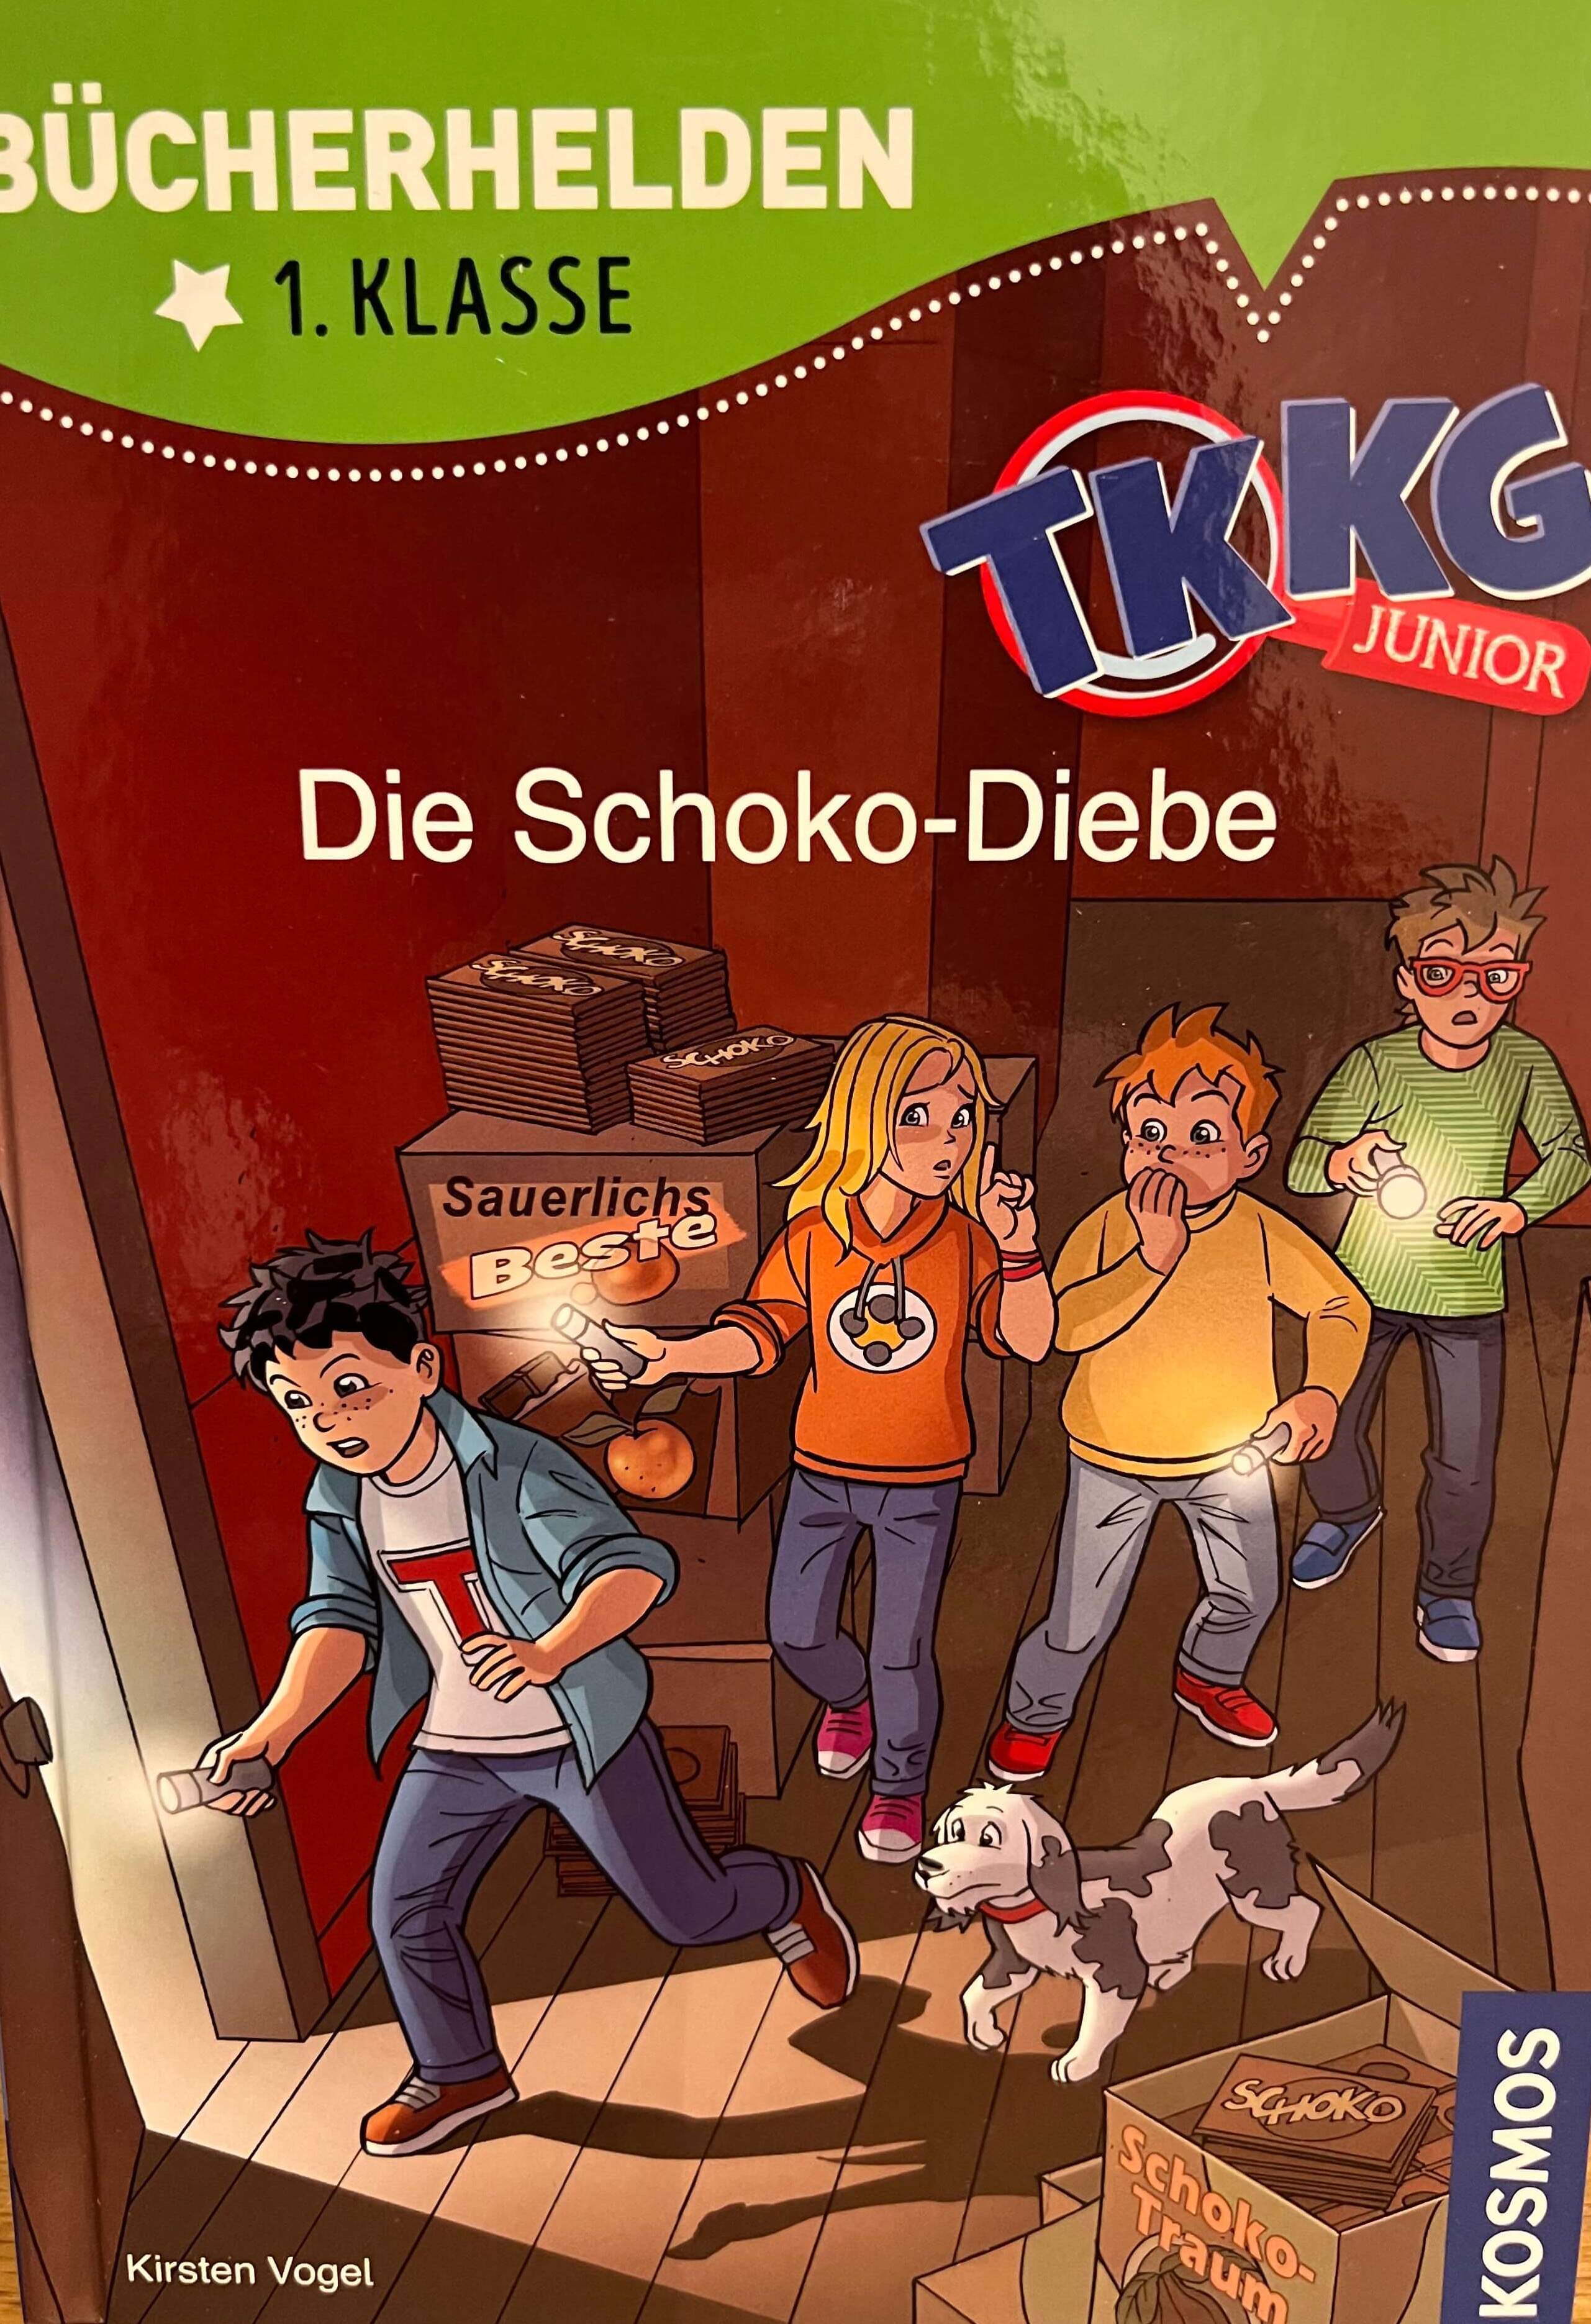 Bücherhelden - 1.Klasse -TKKG - Die Schoko-Diebe